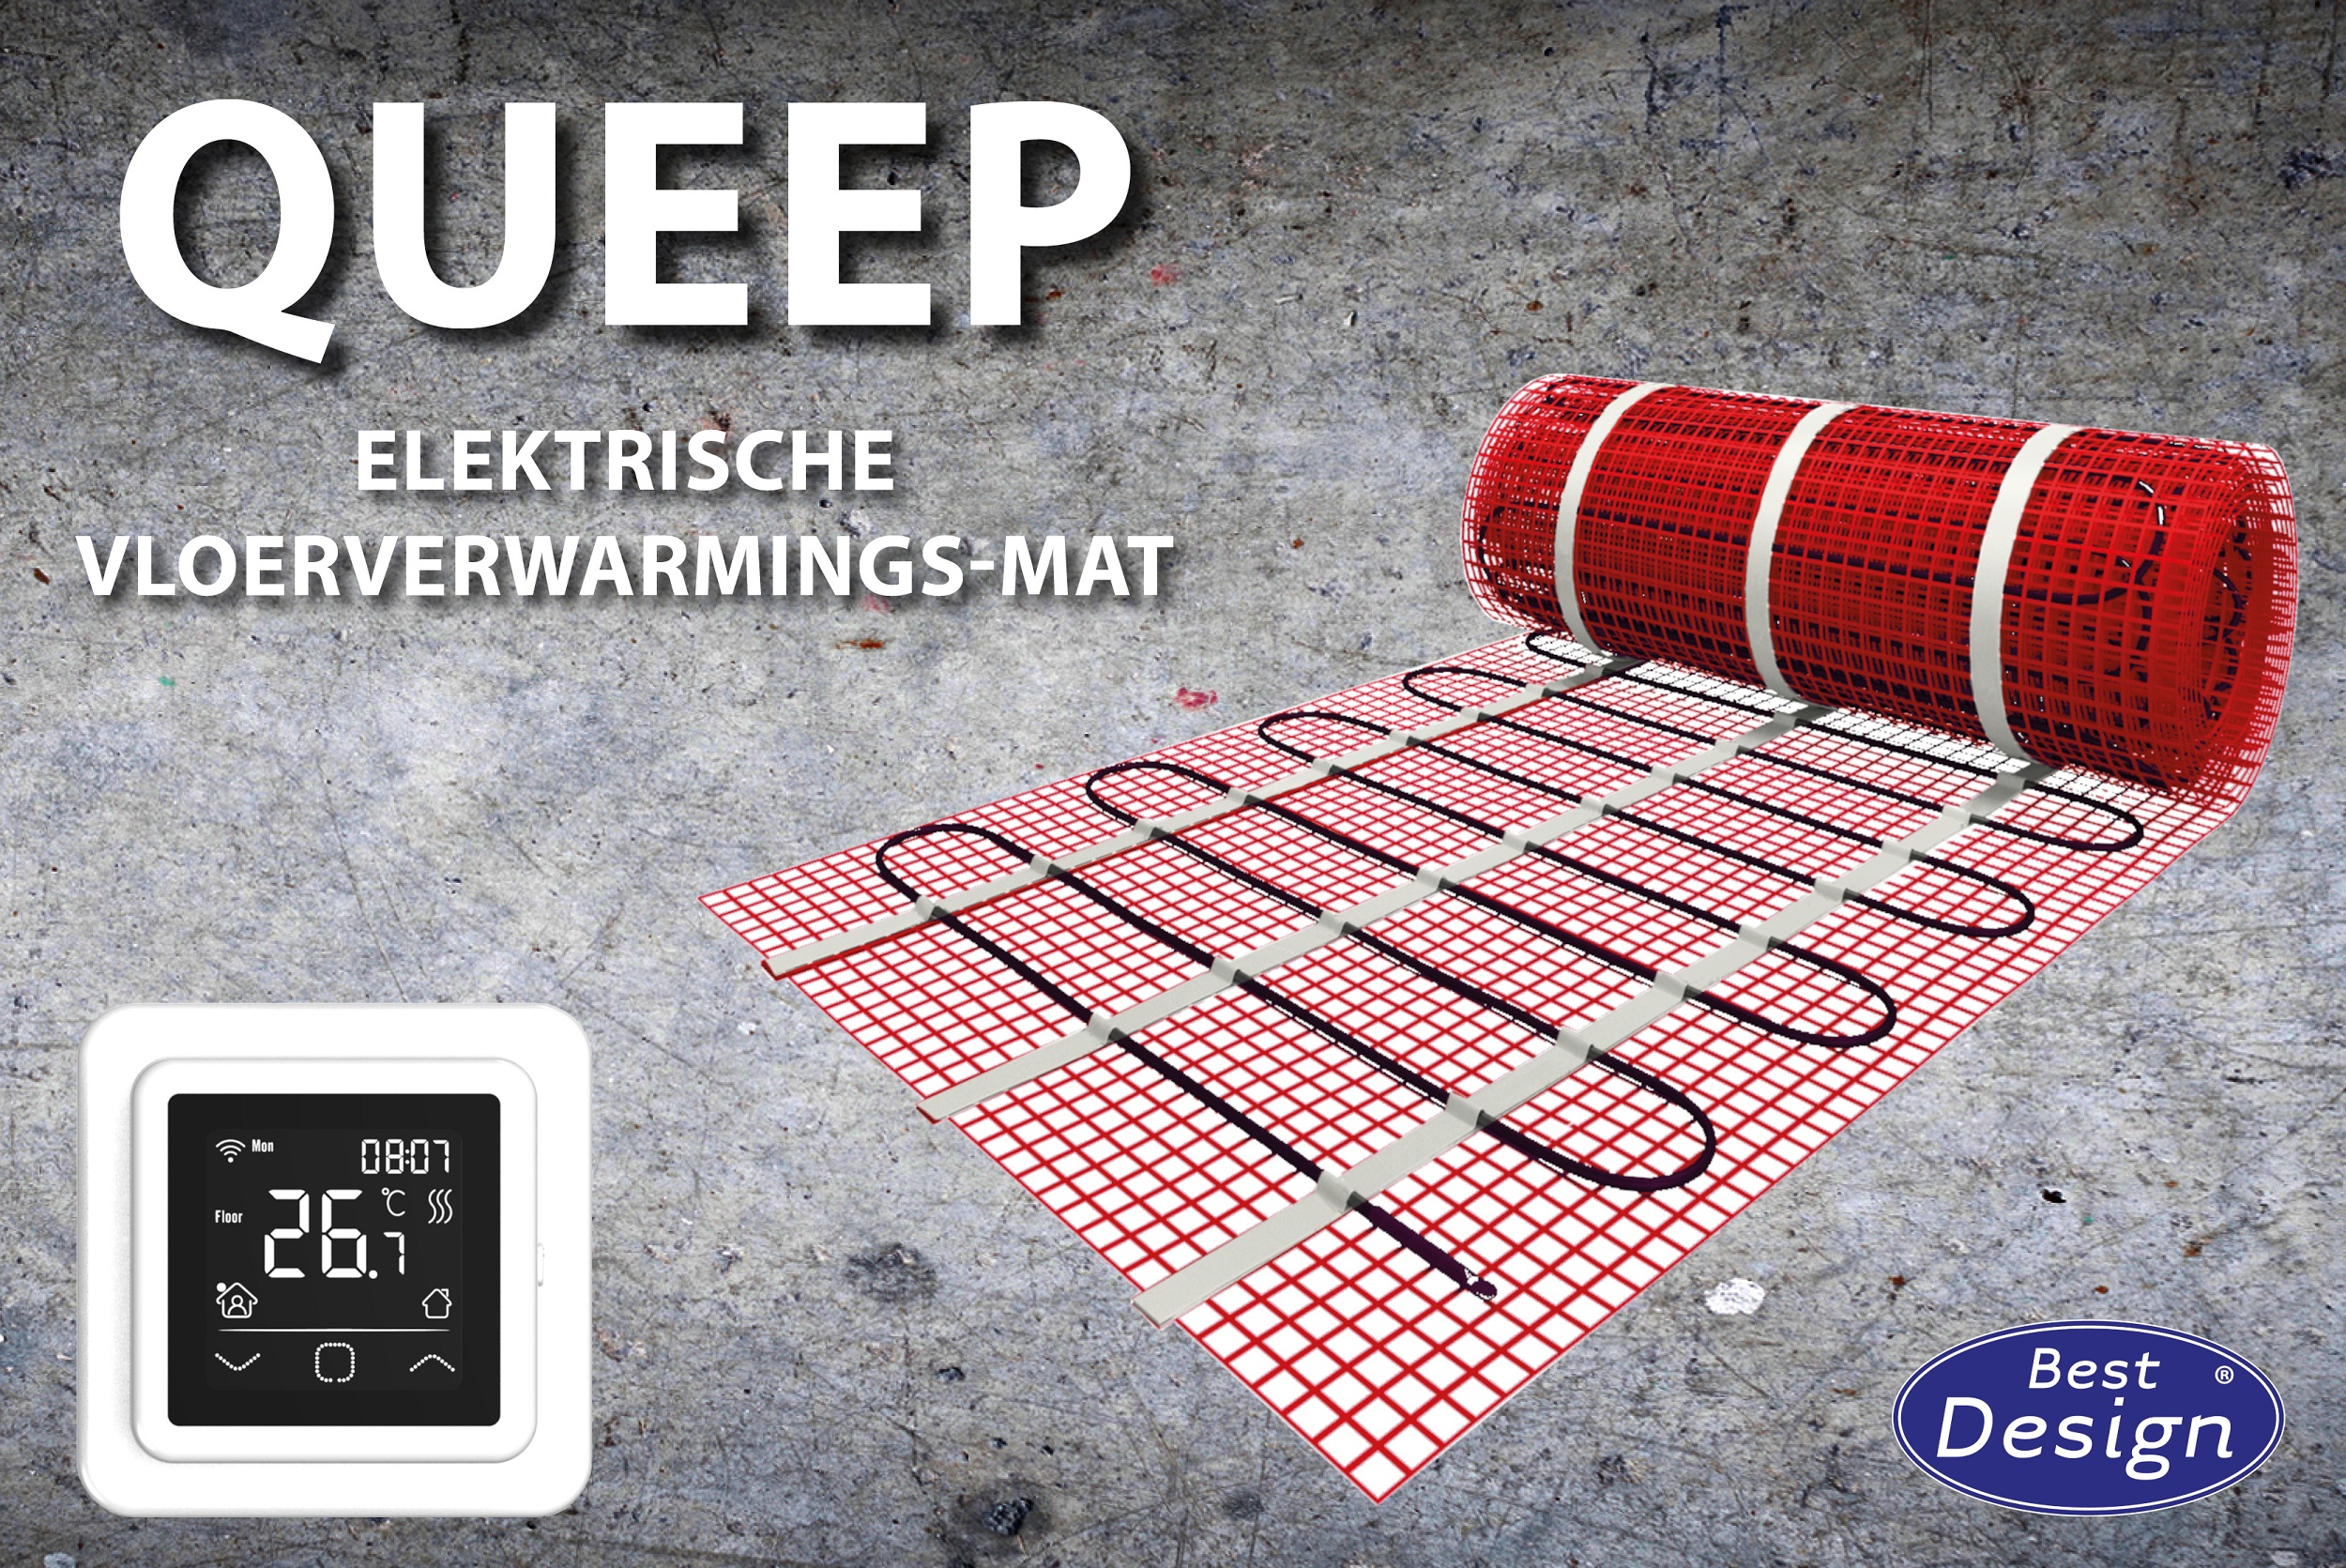 Best-Design "Queep" elektrische vloerverwarmings-mat 2,5 m2 Top Merken Winkel